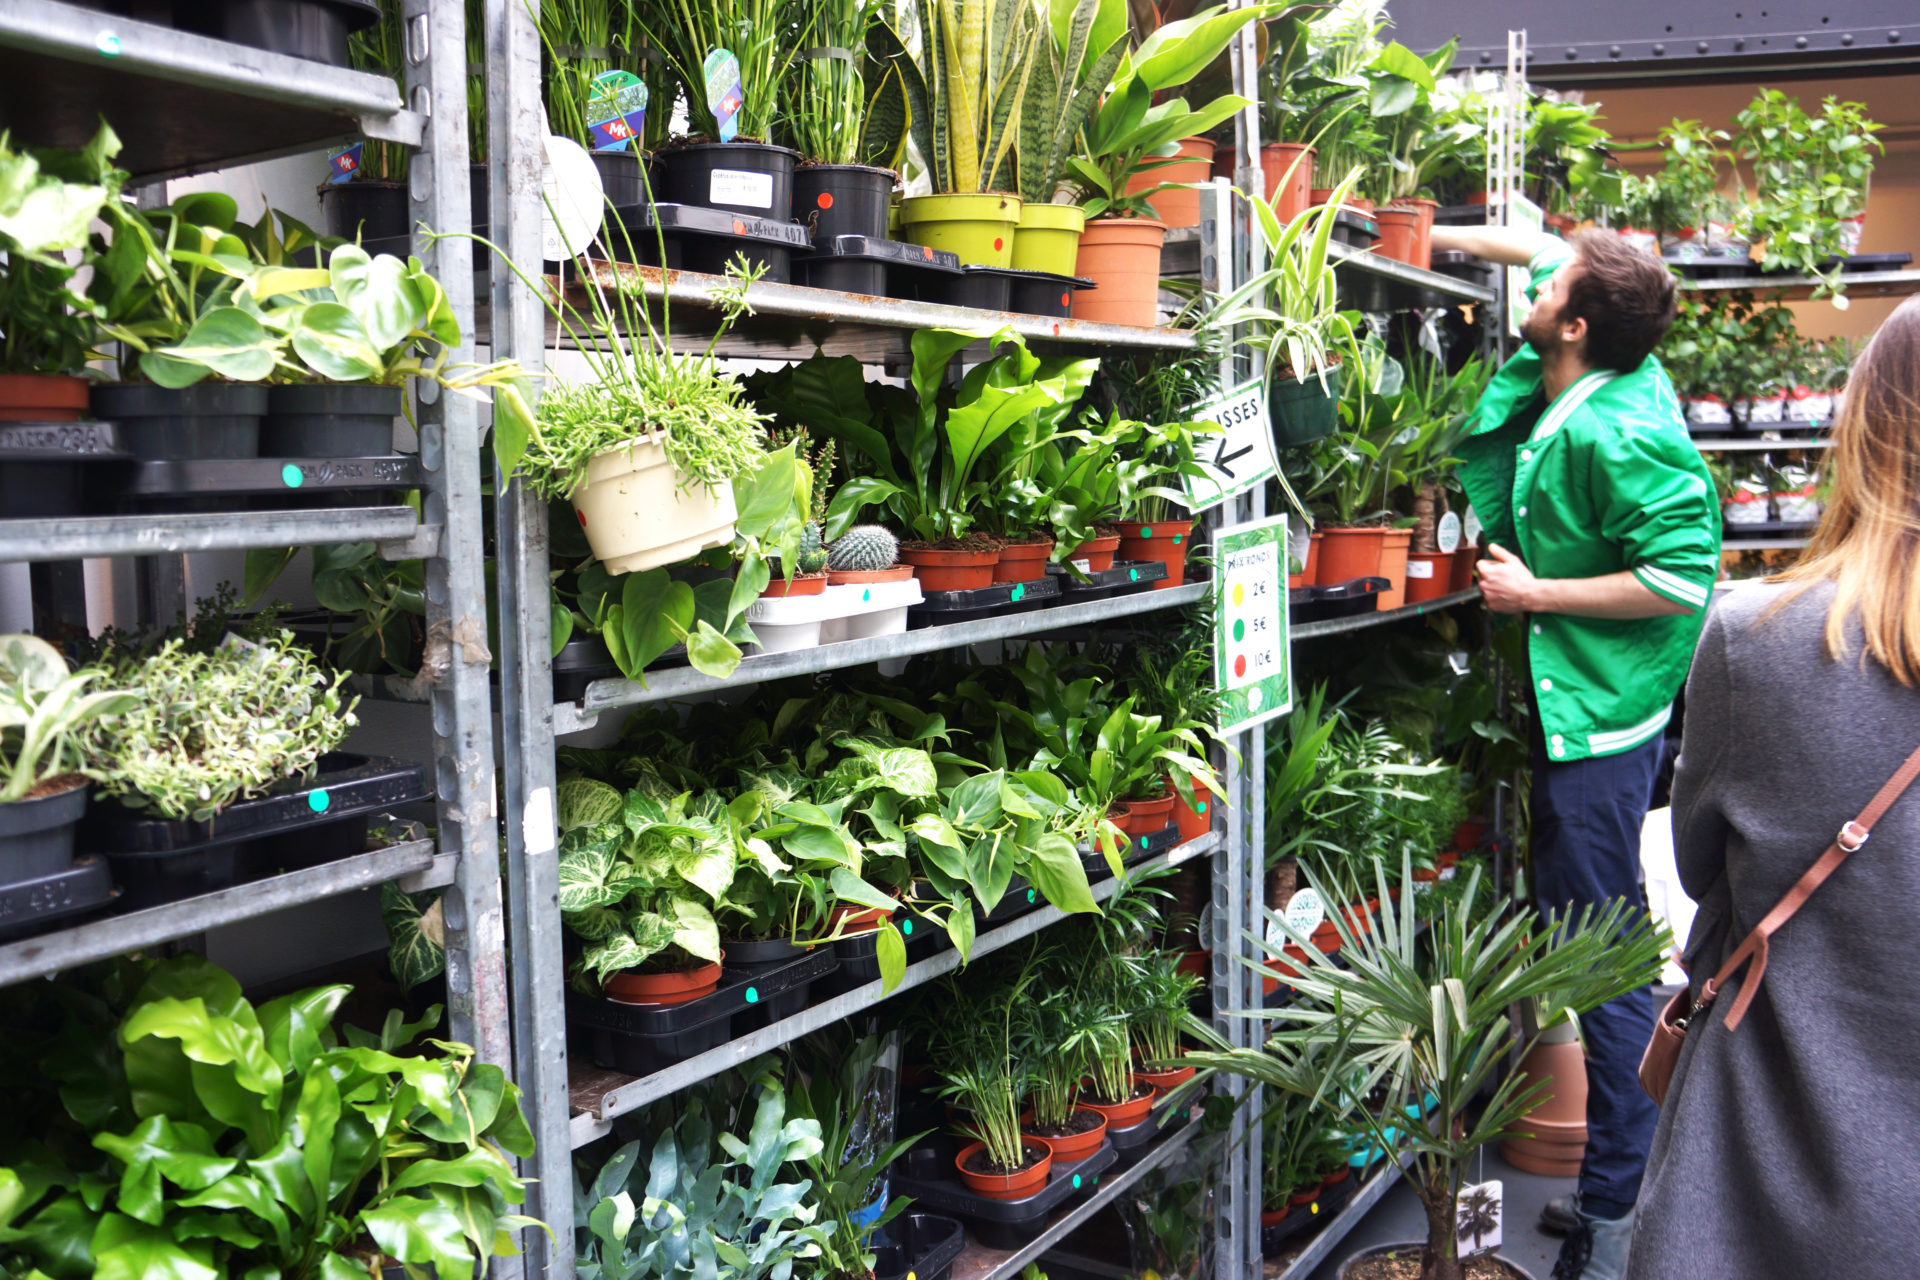 Kaufen Sie preiswerte Pflanzen für ein grünes Interieur in BRÜSSEL!